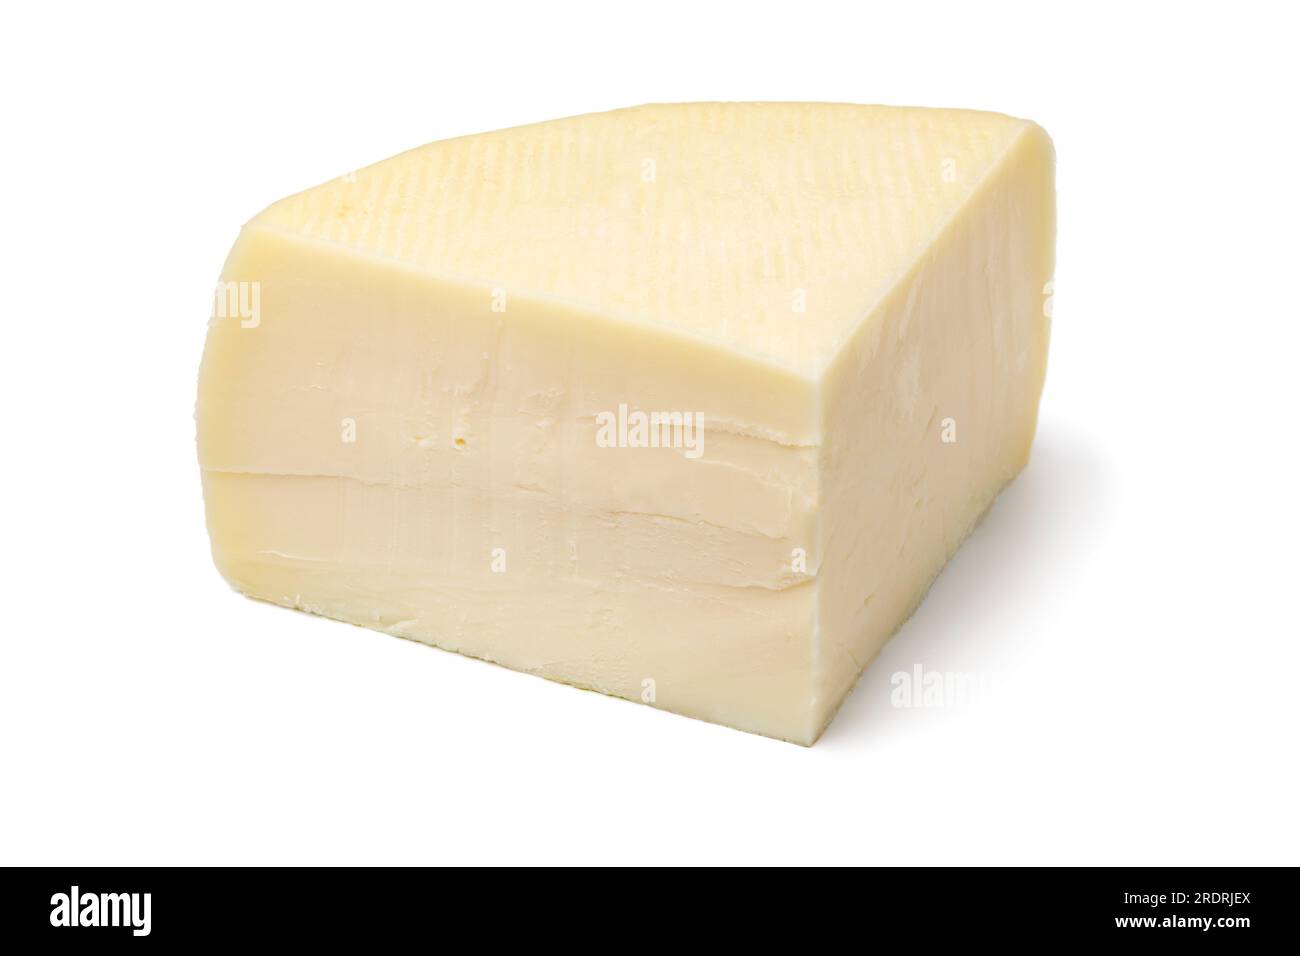 Handwerklich hergestellter halbweicher italienischer Bel Paese-Käse, isoliert auf weißem Hintergrund, Nahaufnahme Stockfoto